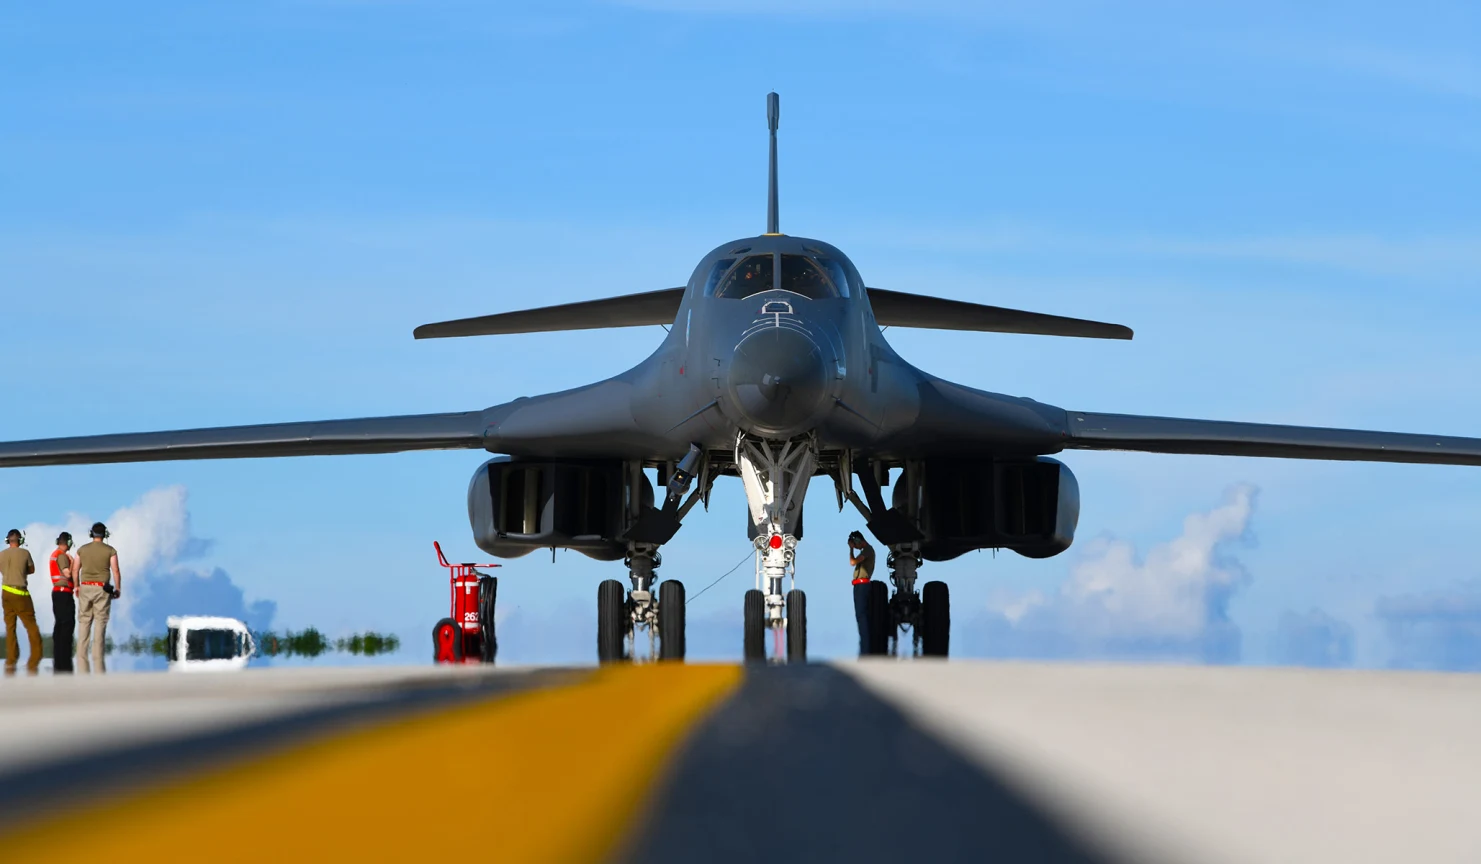 La Fuerza Aérea de EE.UU. quiere retirar el primer bombardero estratégico supersónico B-1B Lancer desde 2021: todos los aviones se retirarán a principios de la década de 2030.